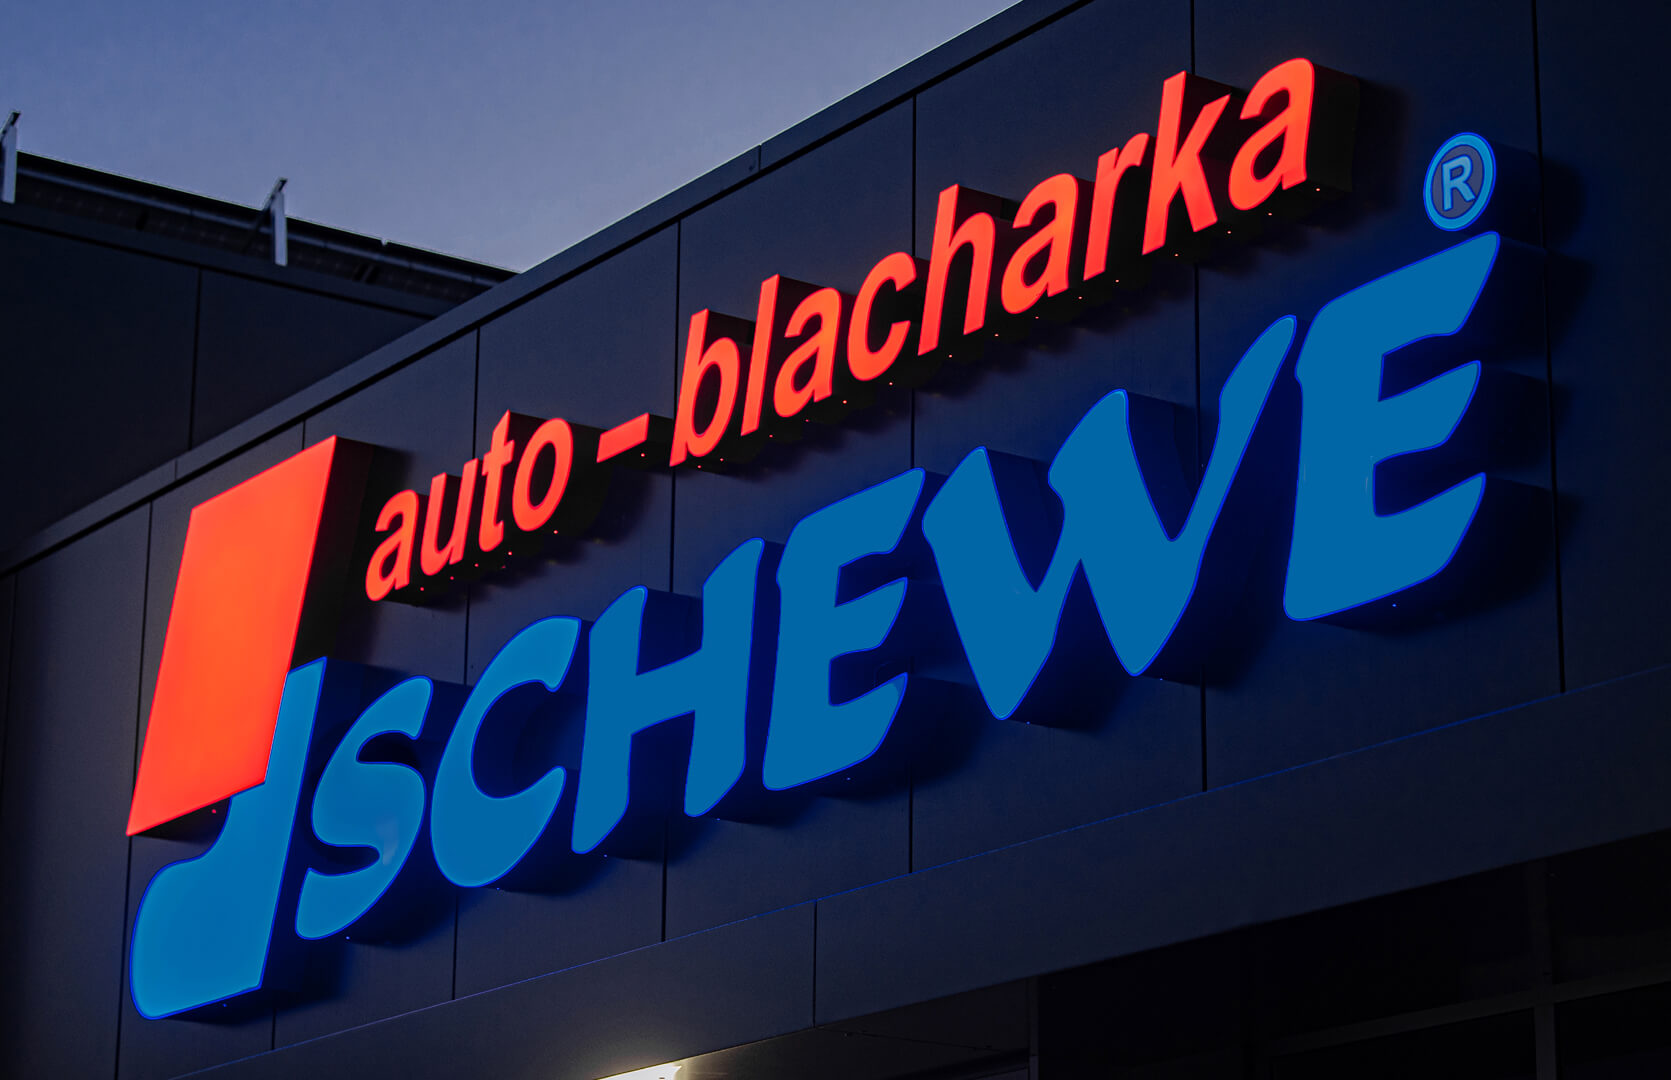 Auto blacharka Schewe - Carrosserie automobile, lettres paysagères éclairées par LED.